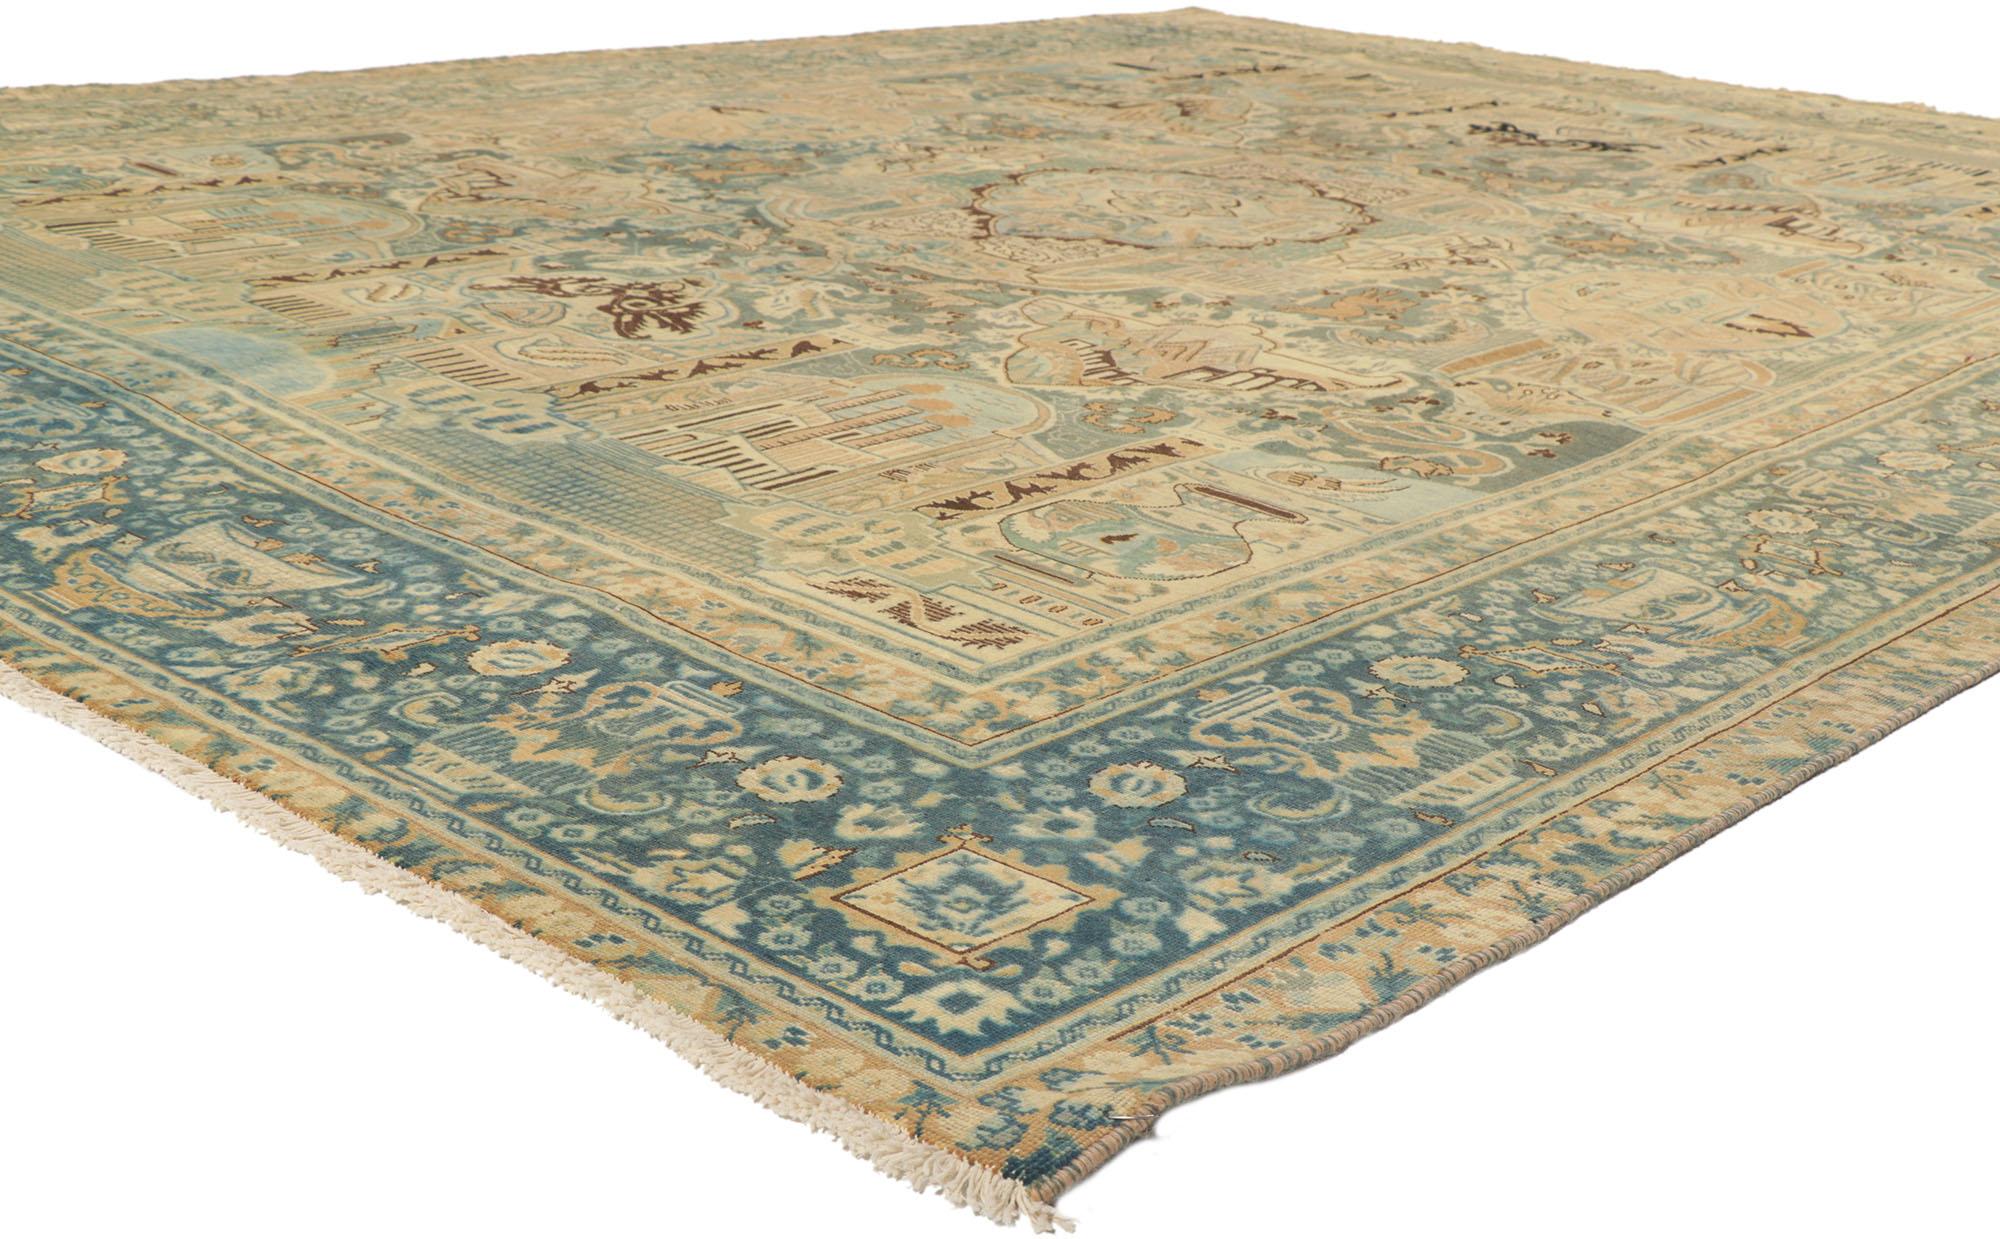 53745 Vintage Persisch Khorassan Bildteppich 09'04 x 12'03. Dieser handgeknüpfte persische Khorassan-Teppich aus Wolle ist voll von winzigen Details und einer malerischen Szene, die es dem Betrachter ermöglicht, immer wieder faszinierende Motive zu